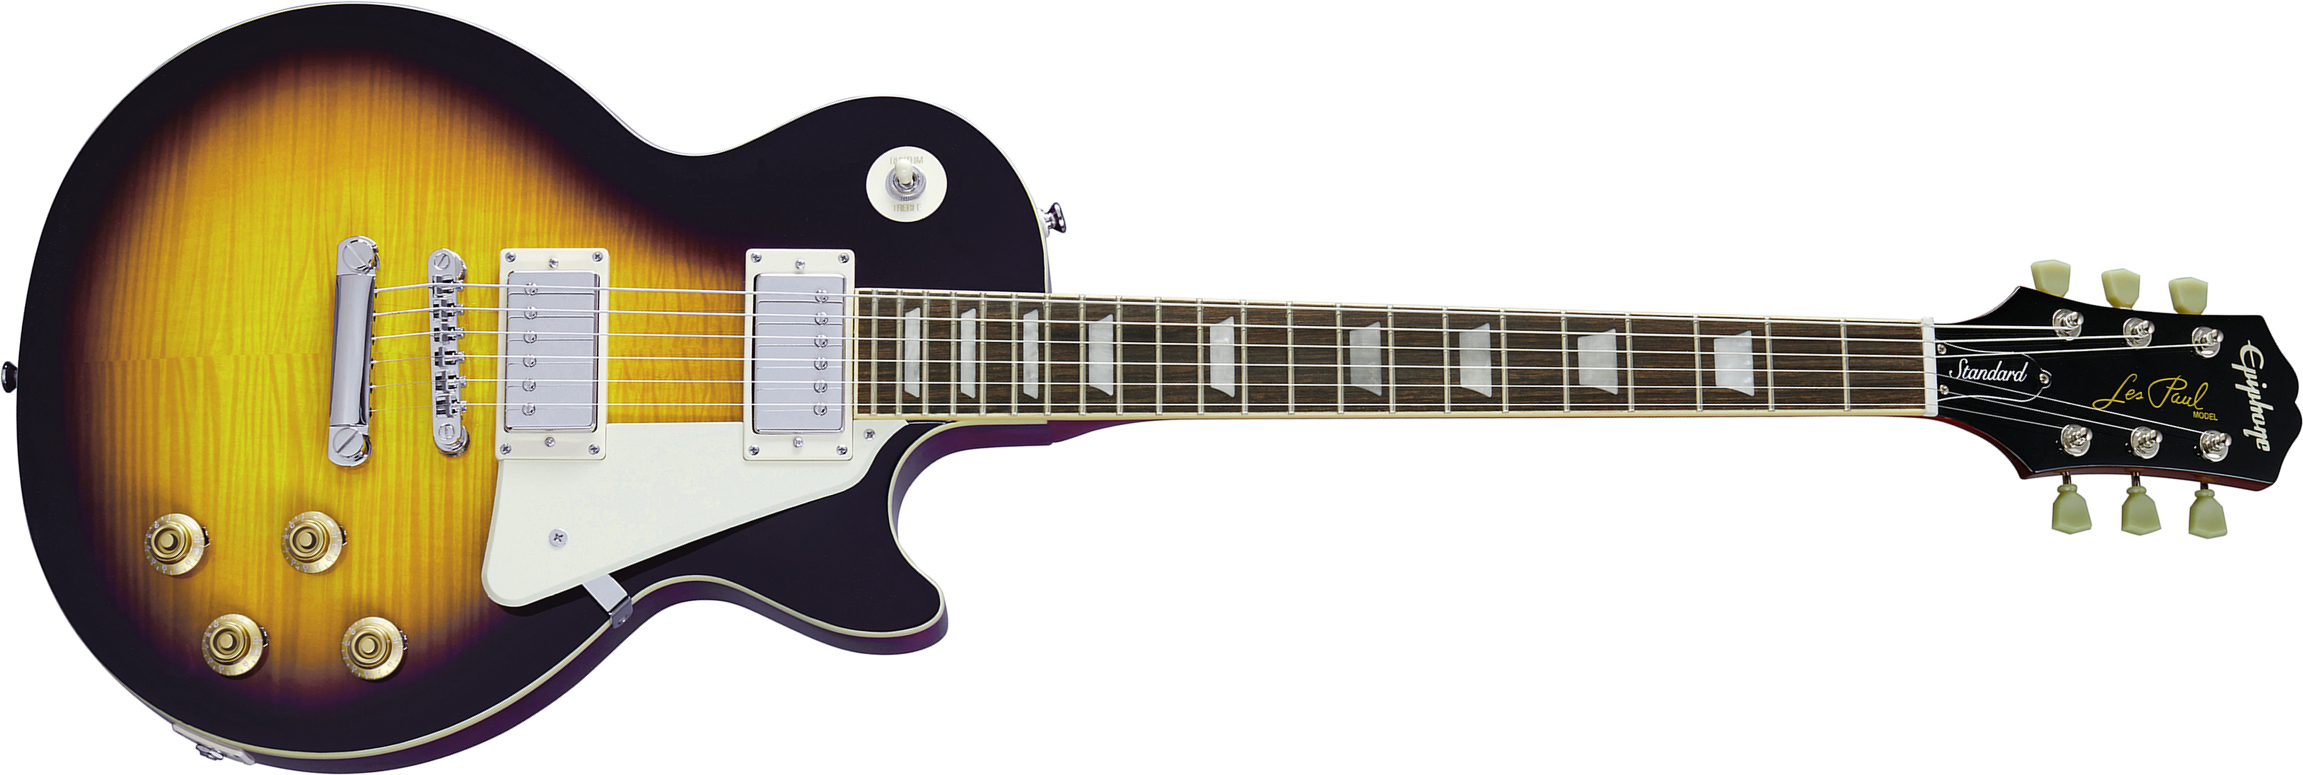 Epiphone Les Paul Standard 50s 2h Ht Rw - Vintage Sunburst - Guitarra eléctrica de corte único. - Main picture